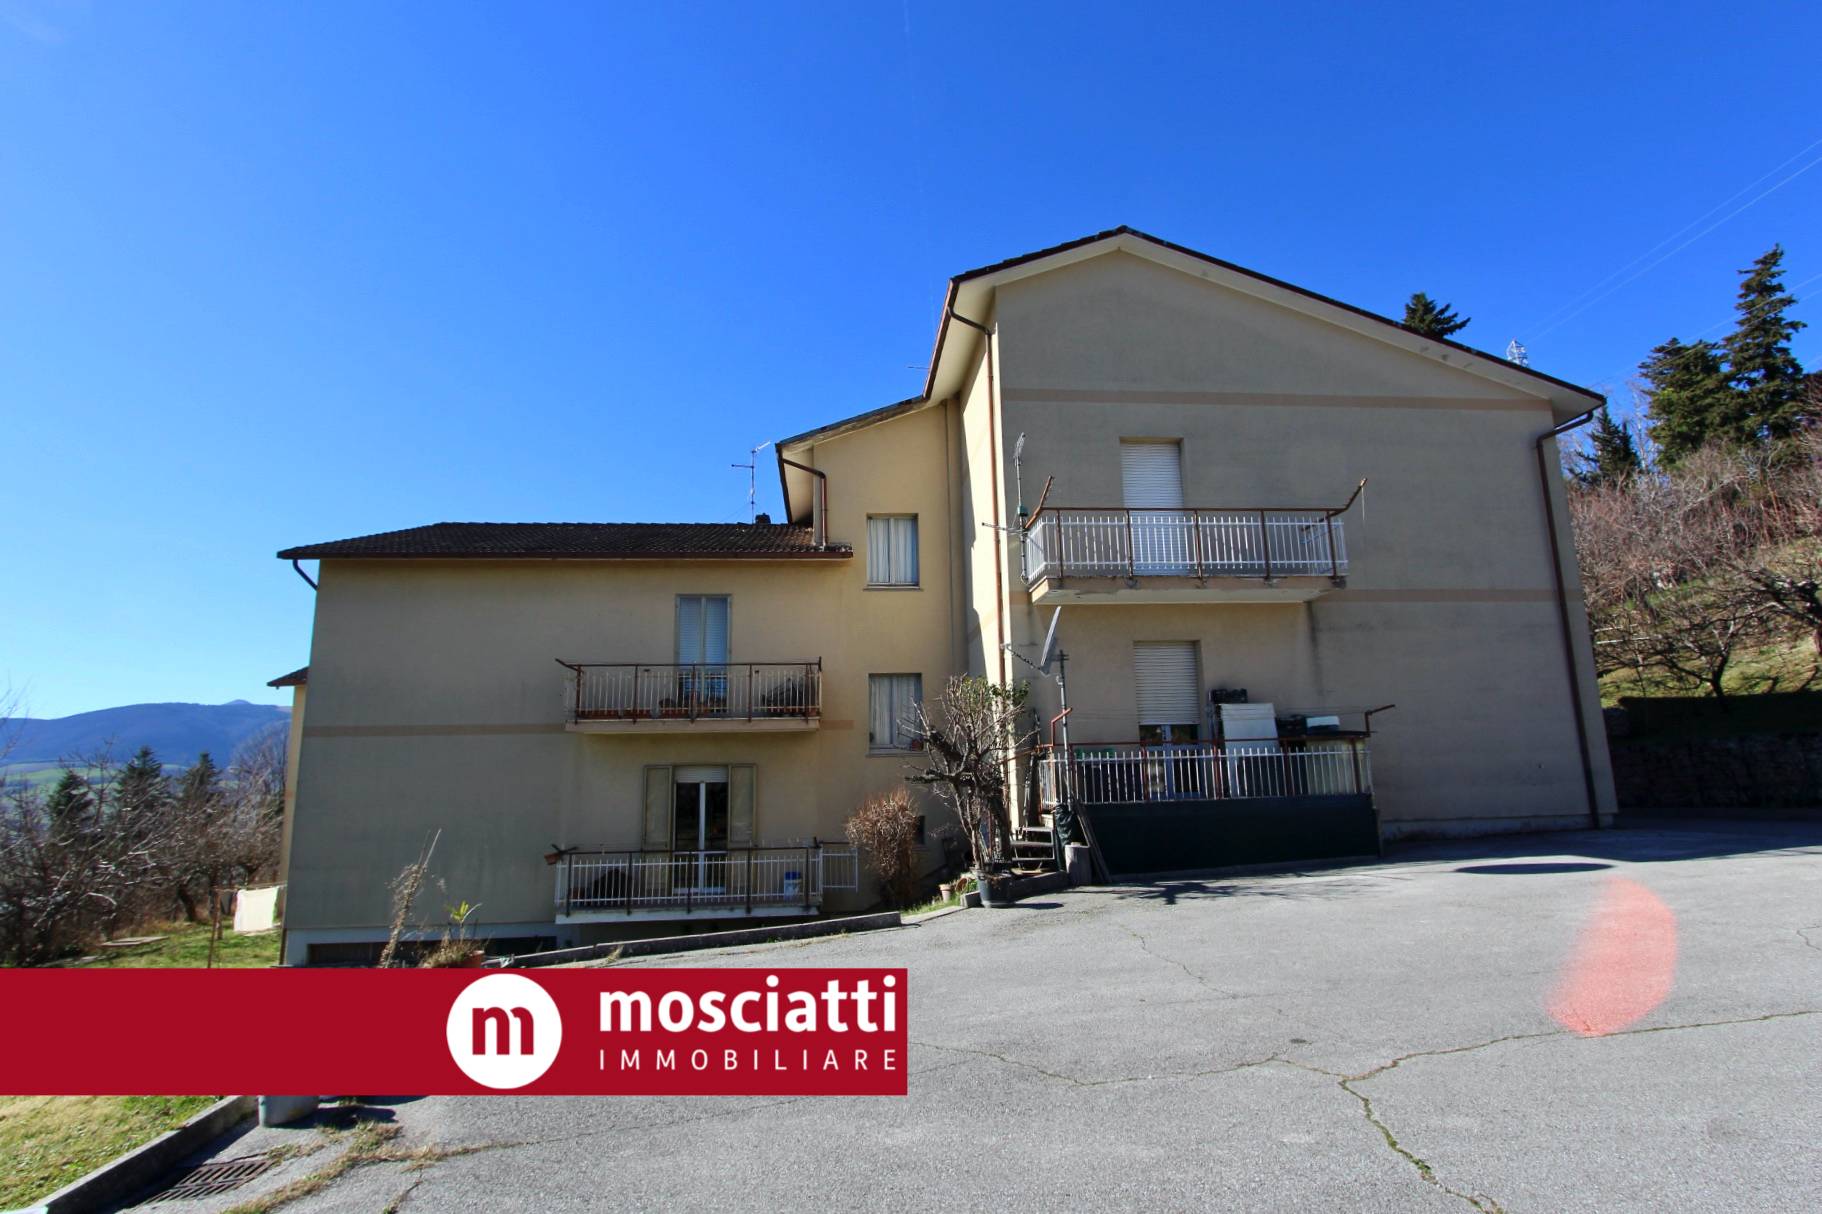 Appartamento in vendita a Camerino, 2 locali, prezzo € 60.000 | PortaleAgenzieImmobiliari.it